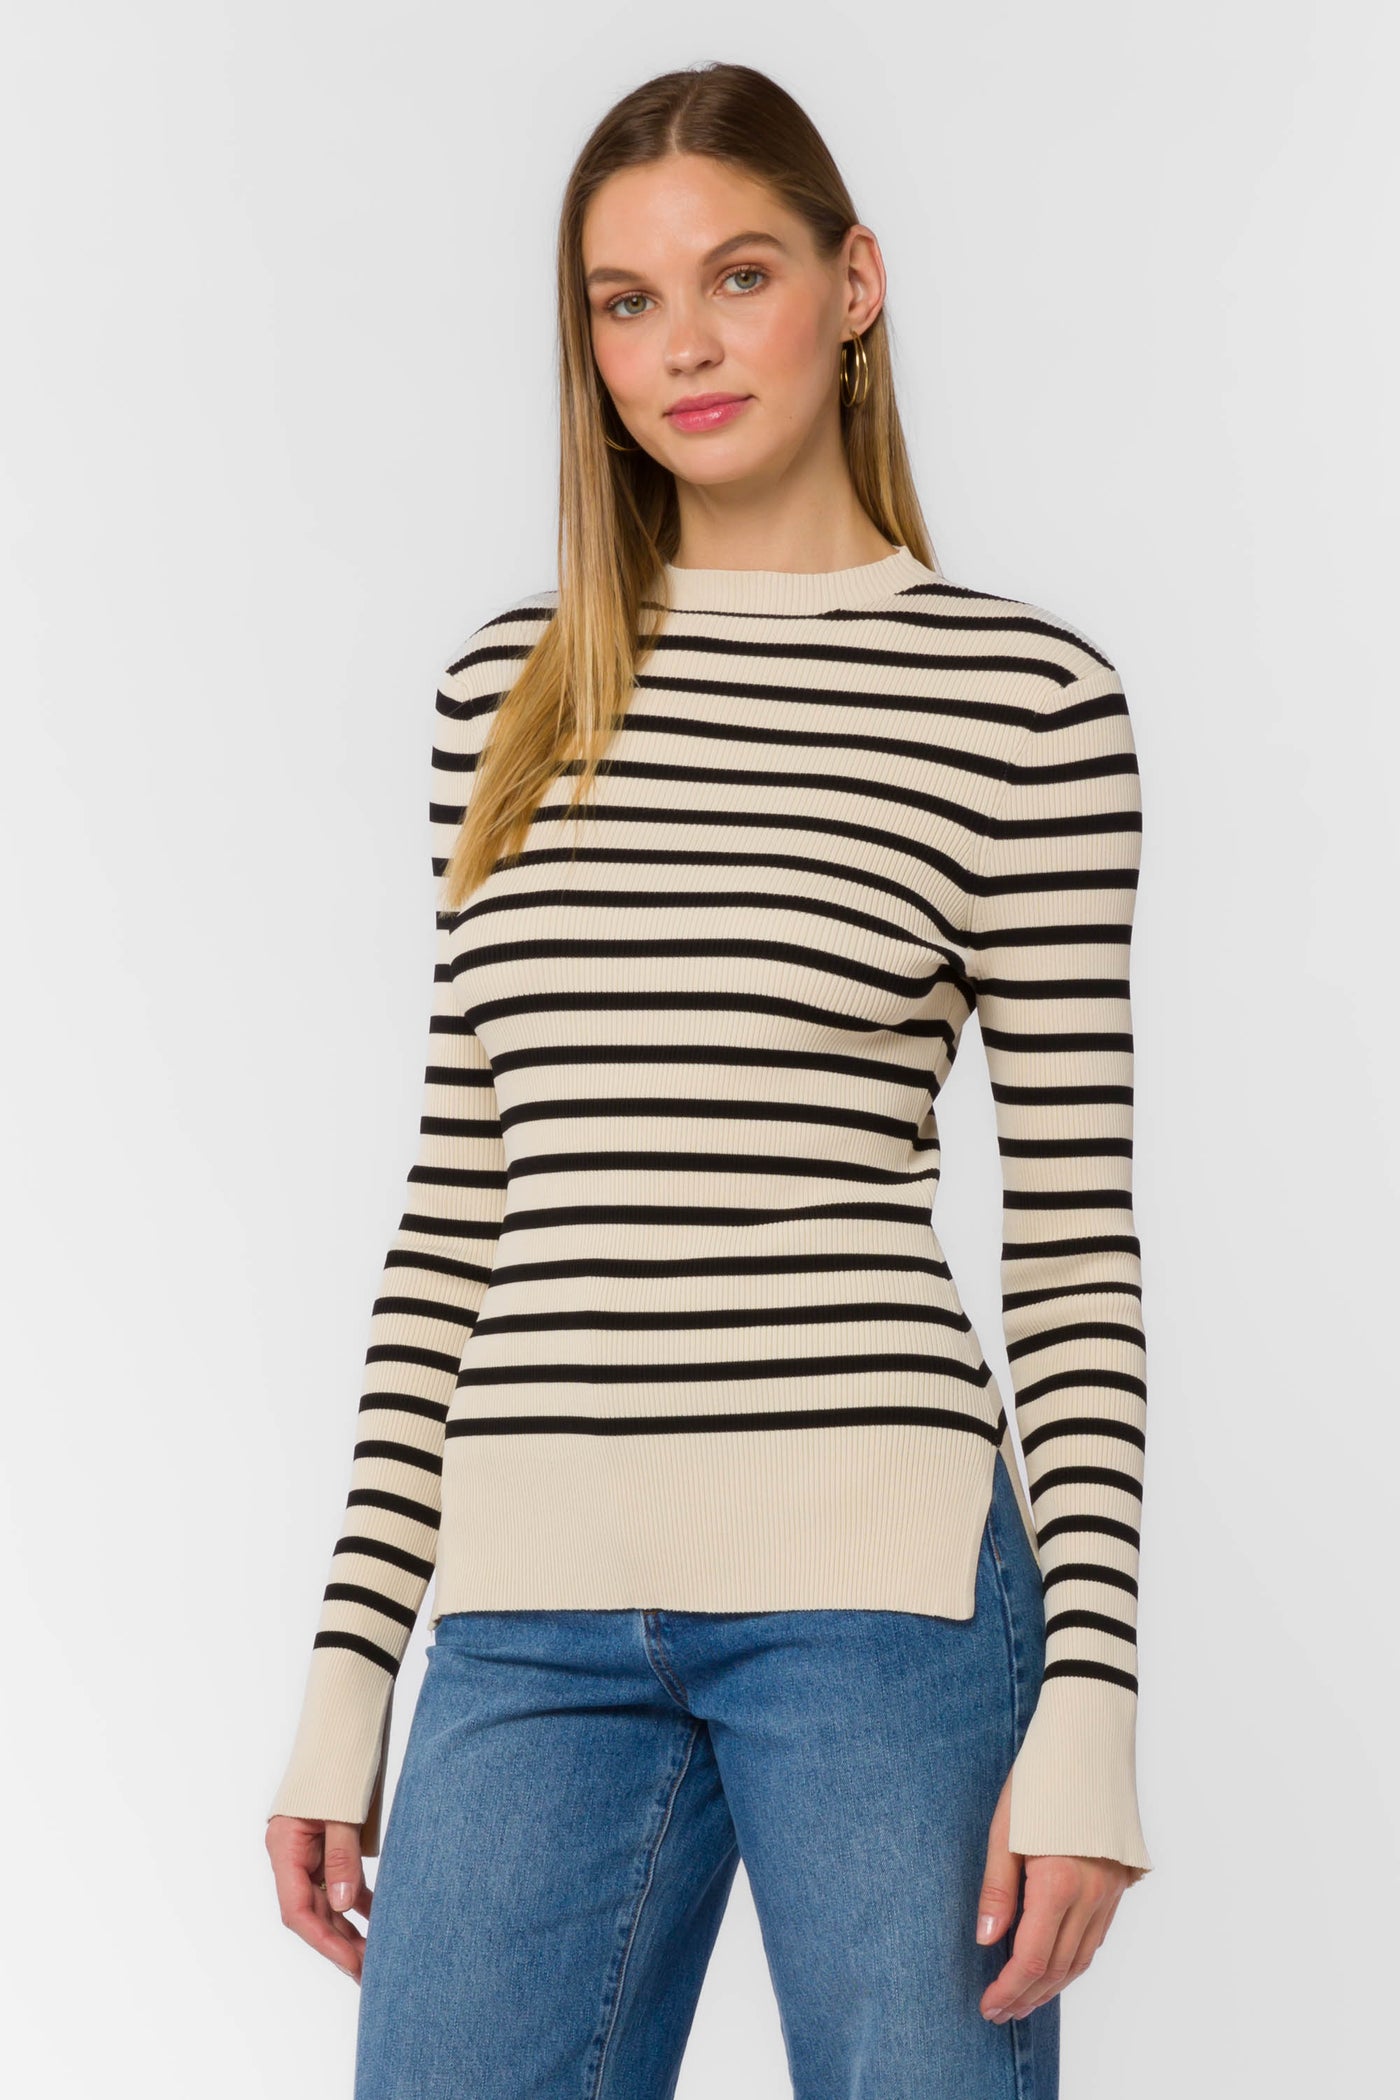 Teresa Black Ivory Stripe Sweater - Sweaters - Velvet Heart Clothing